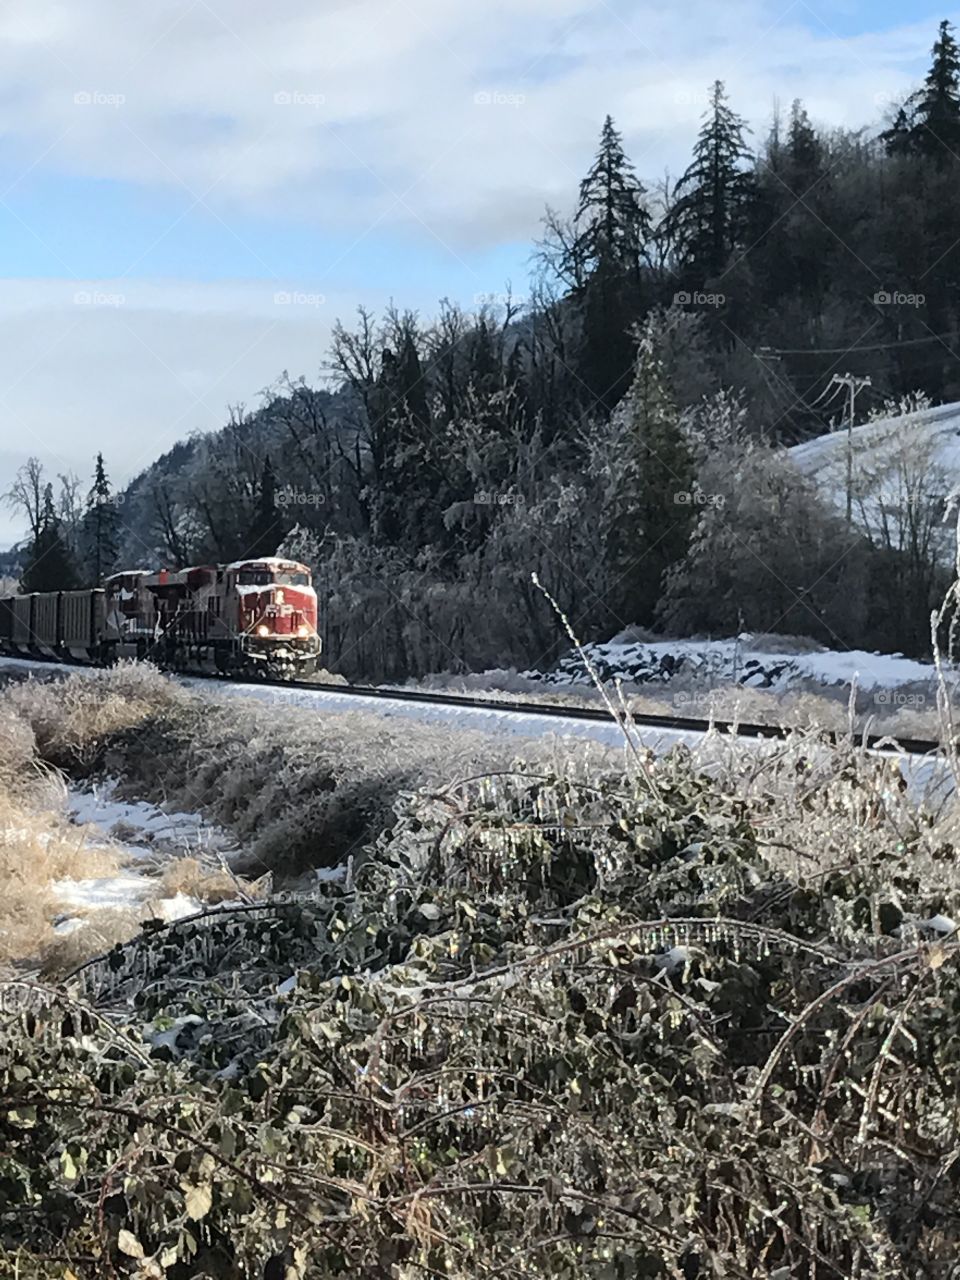 Snowy train